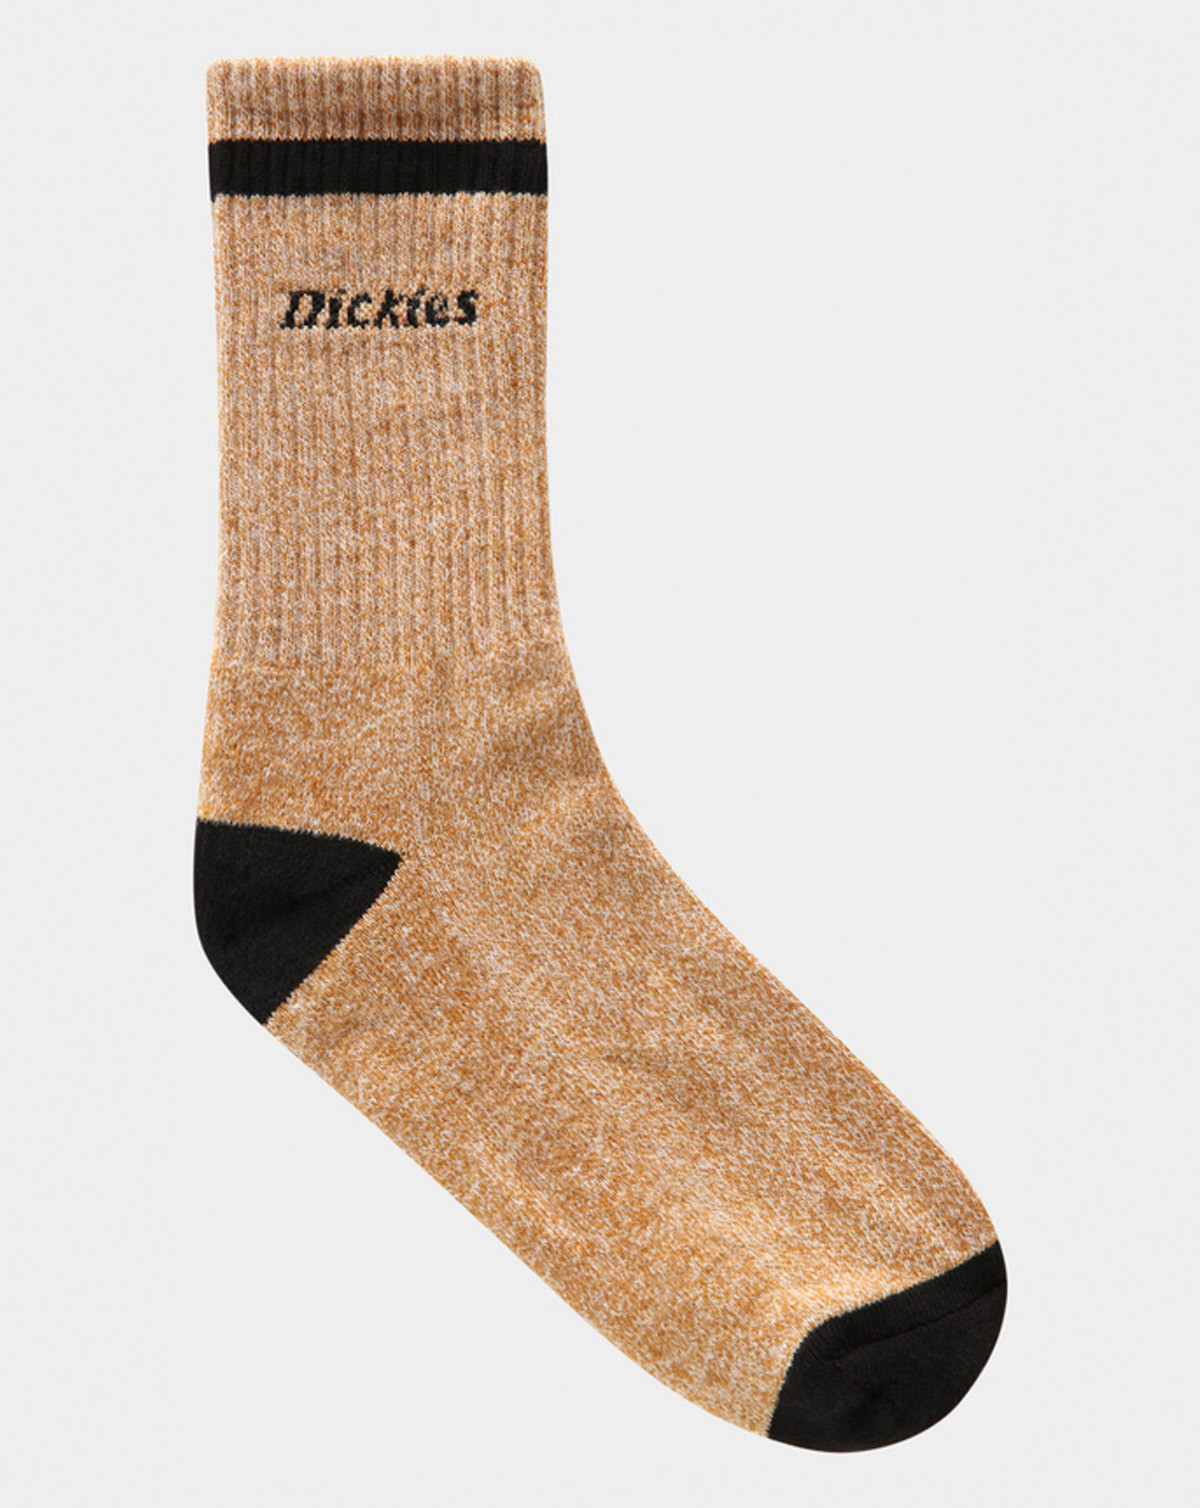 16: Dickies Bettles Socks (Rust Orange, 43-46)